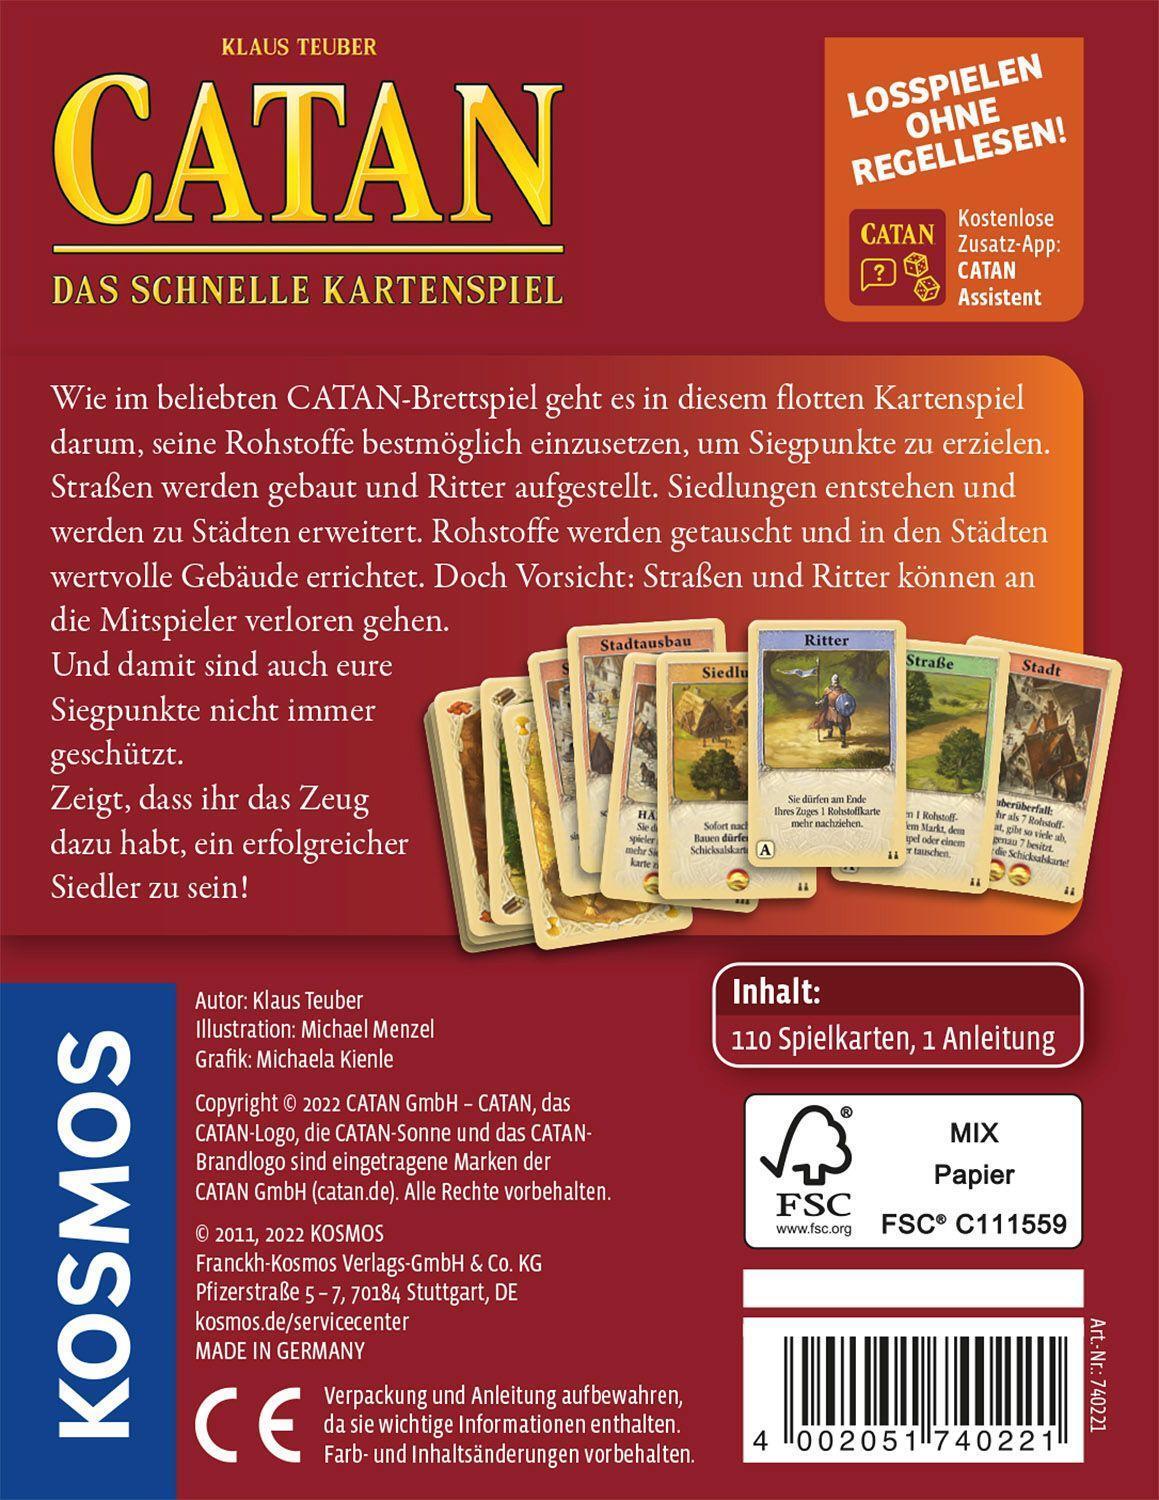 Bild: 4002051740221 | Die Siedler von Catan - Das schnelle Kartenspiel | Klaus Teuber | 2011